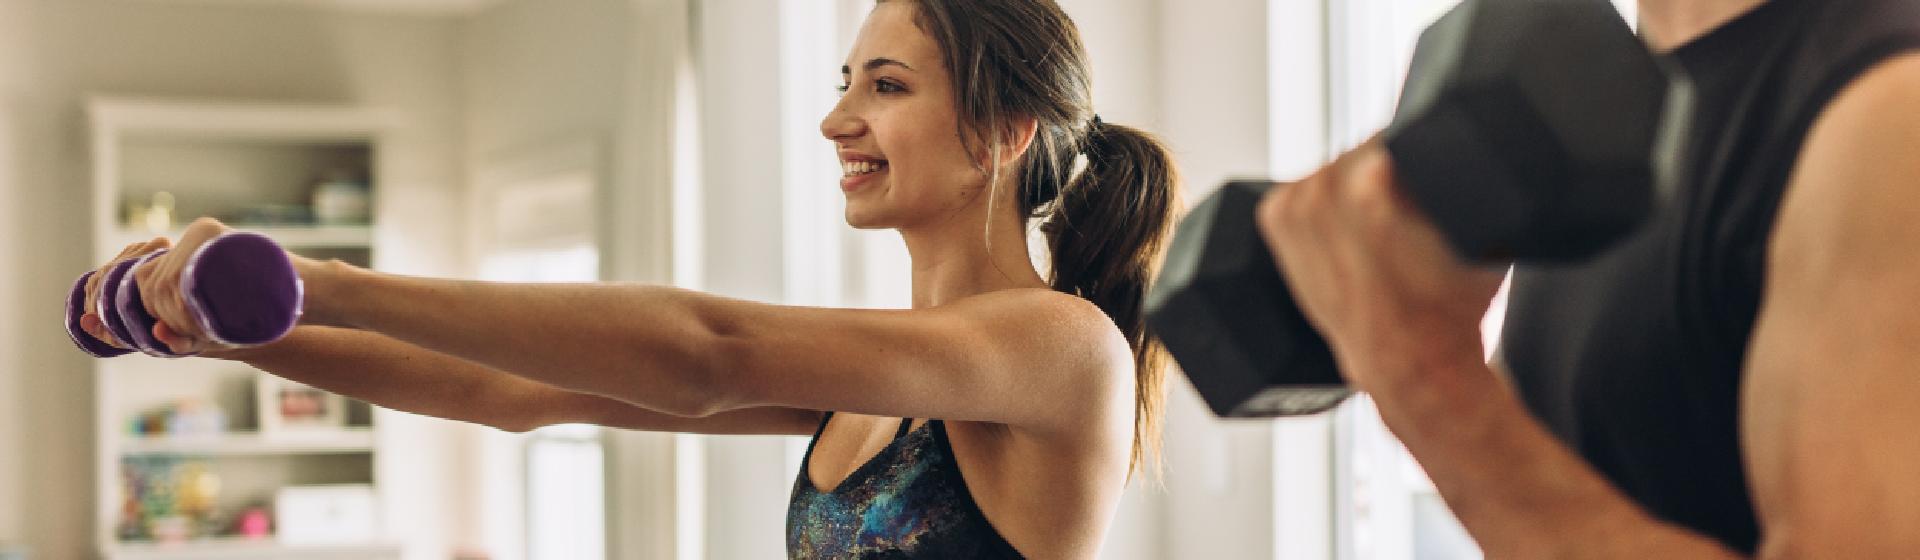 Capa do post: Como ganhar massa muscular? 10 itens que vão te ajudar nos treinos